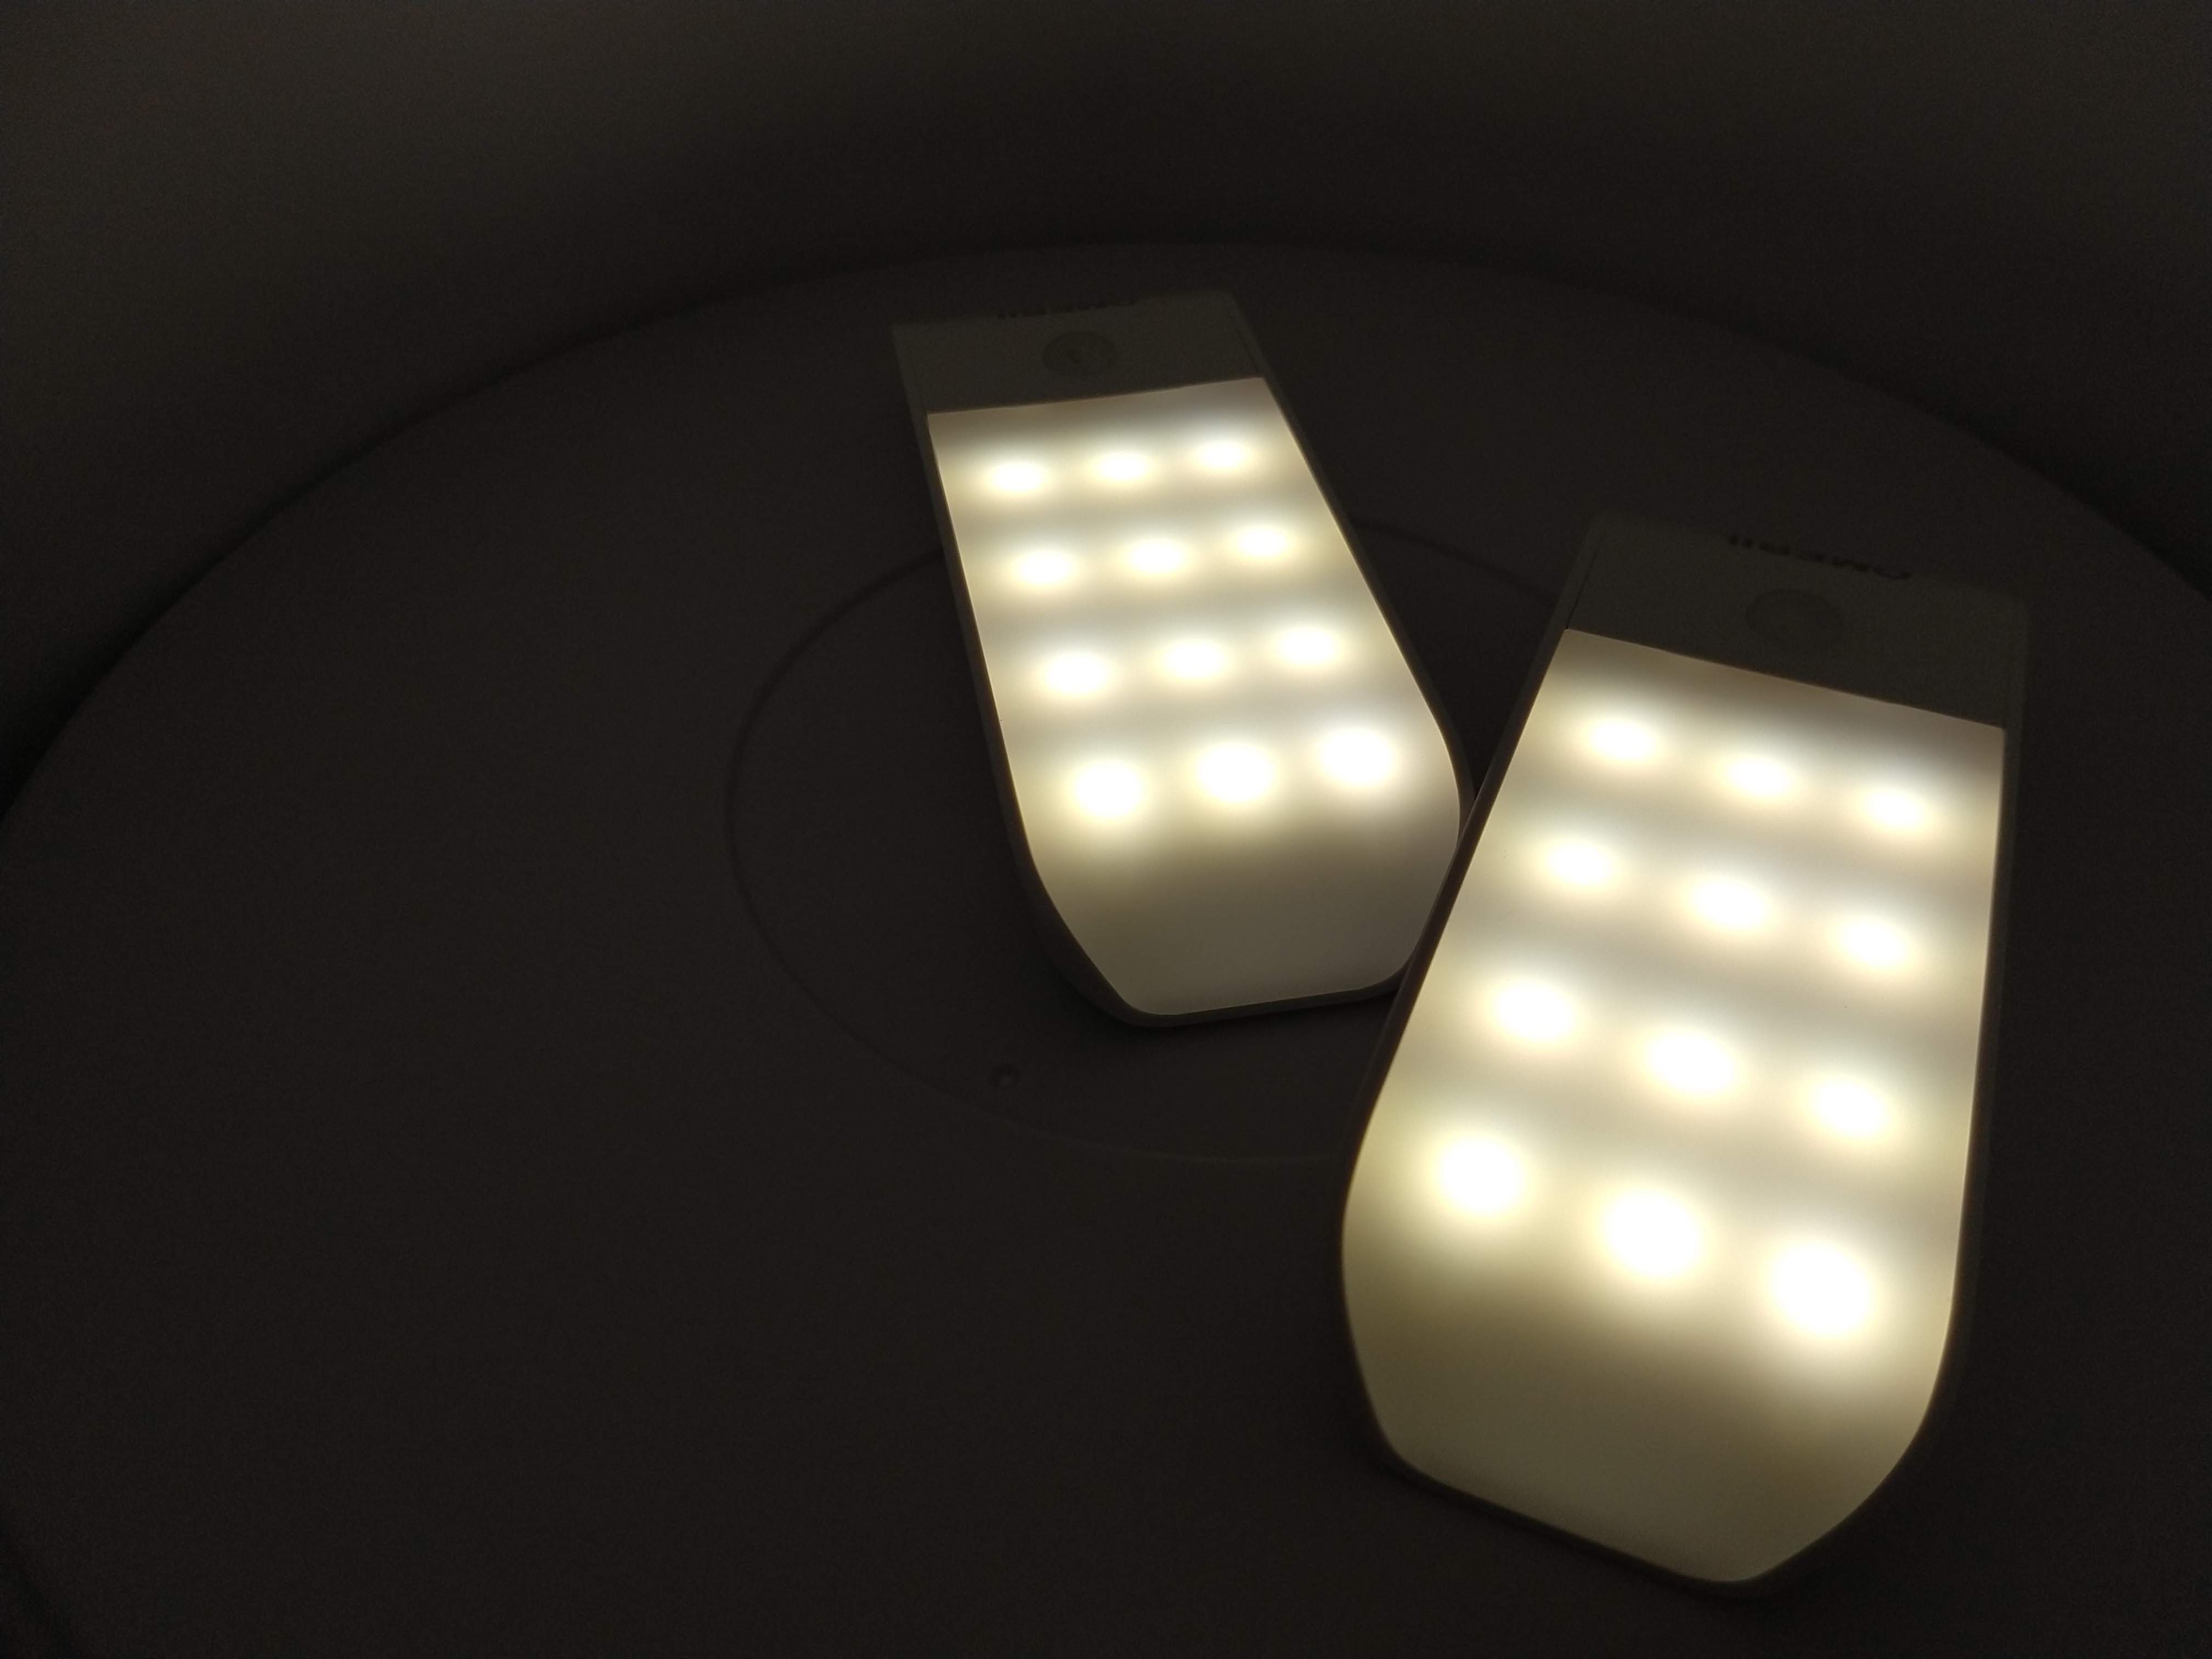 LED Nachtlicht Steckdose Bewegungsmelder ON//OFF//AUTO 2 St/ücke Led Steckdosenlicht mit 3 Modi 8 LEDs Helligkeitssensor Orientierungslicht f/ür Kinderzimmer Badezimmer Treppe